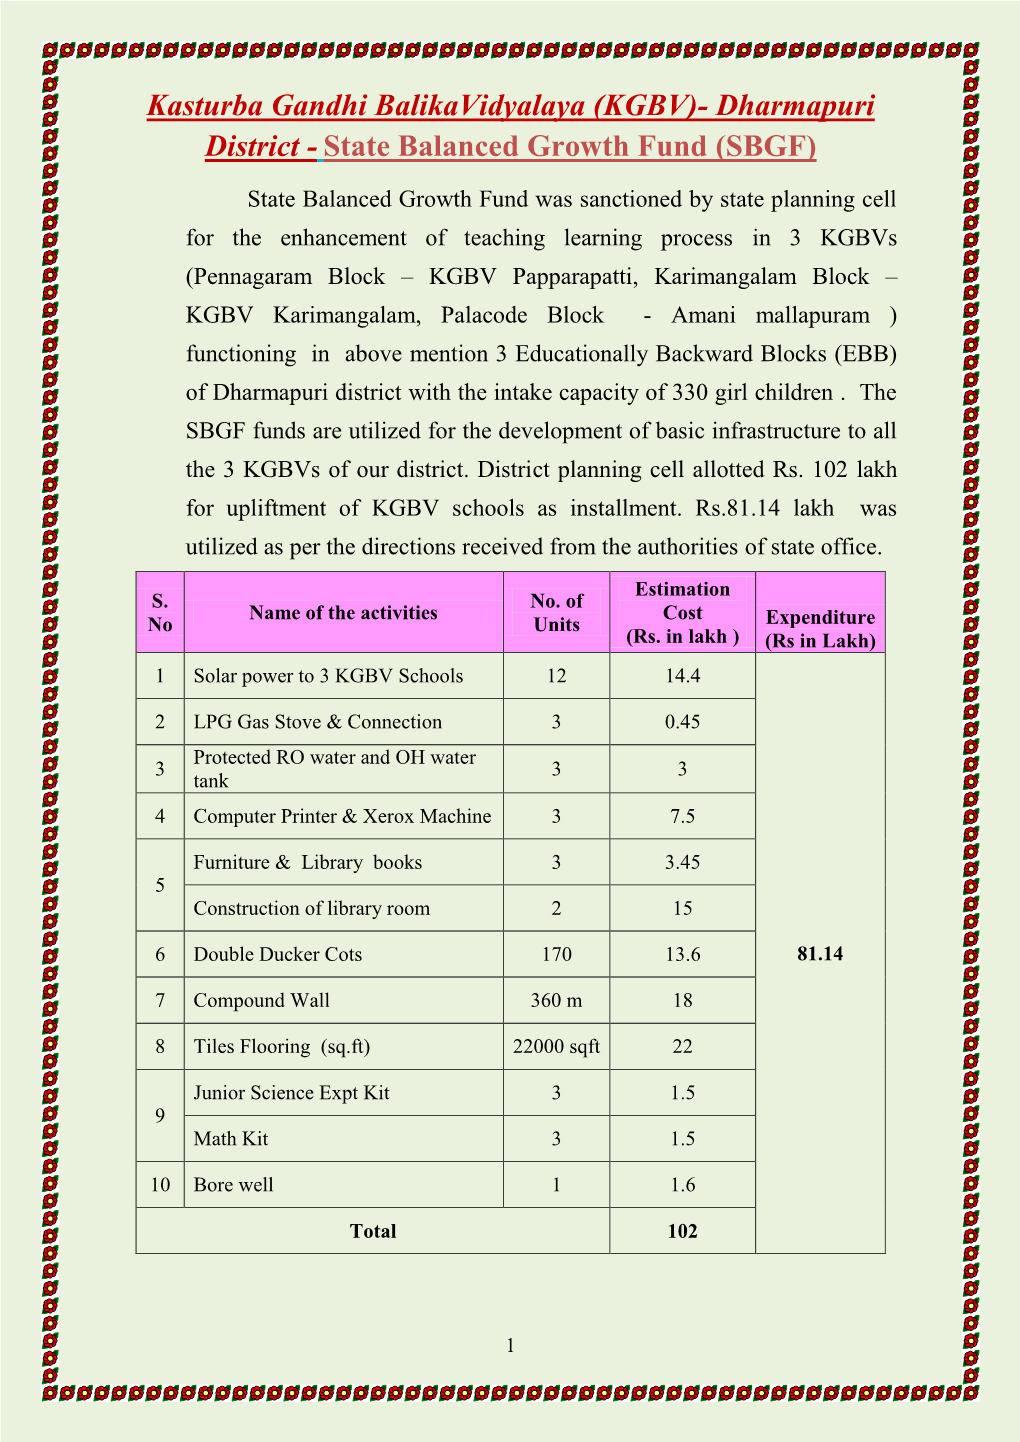 Kasturba Gandhi Balikavidyalaya (KGBV)- Dharmapuri District - State Balanced Growth Fund (SBGF)